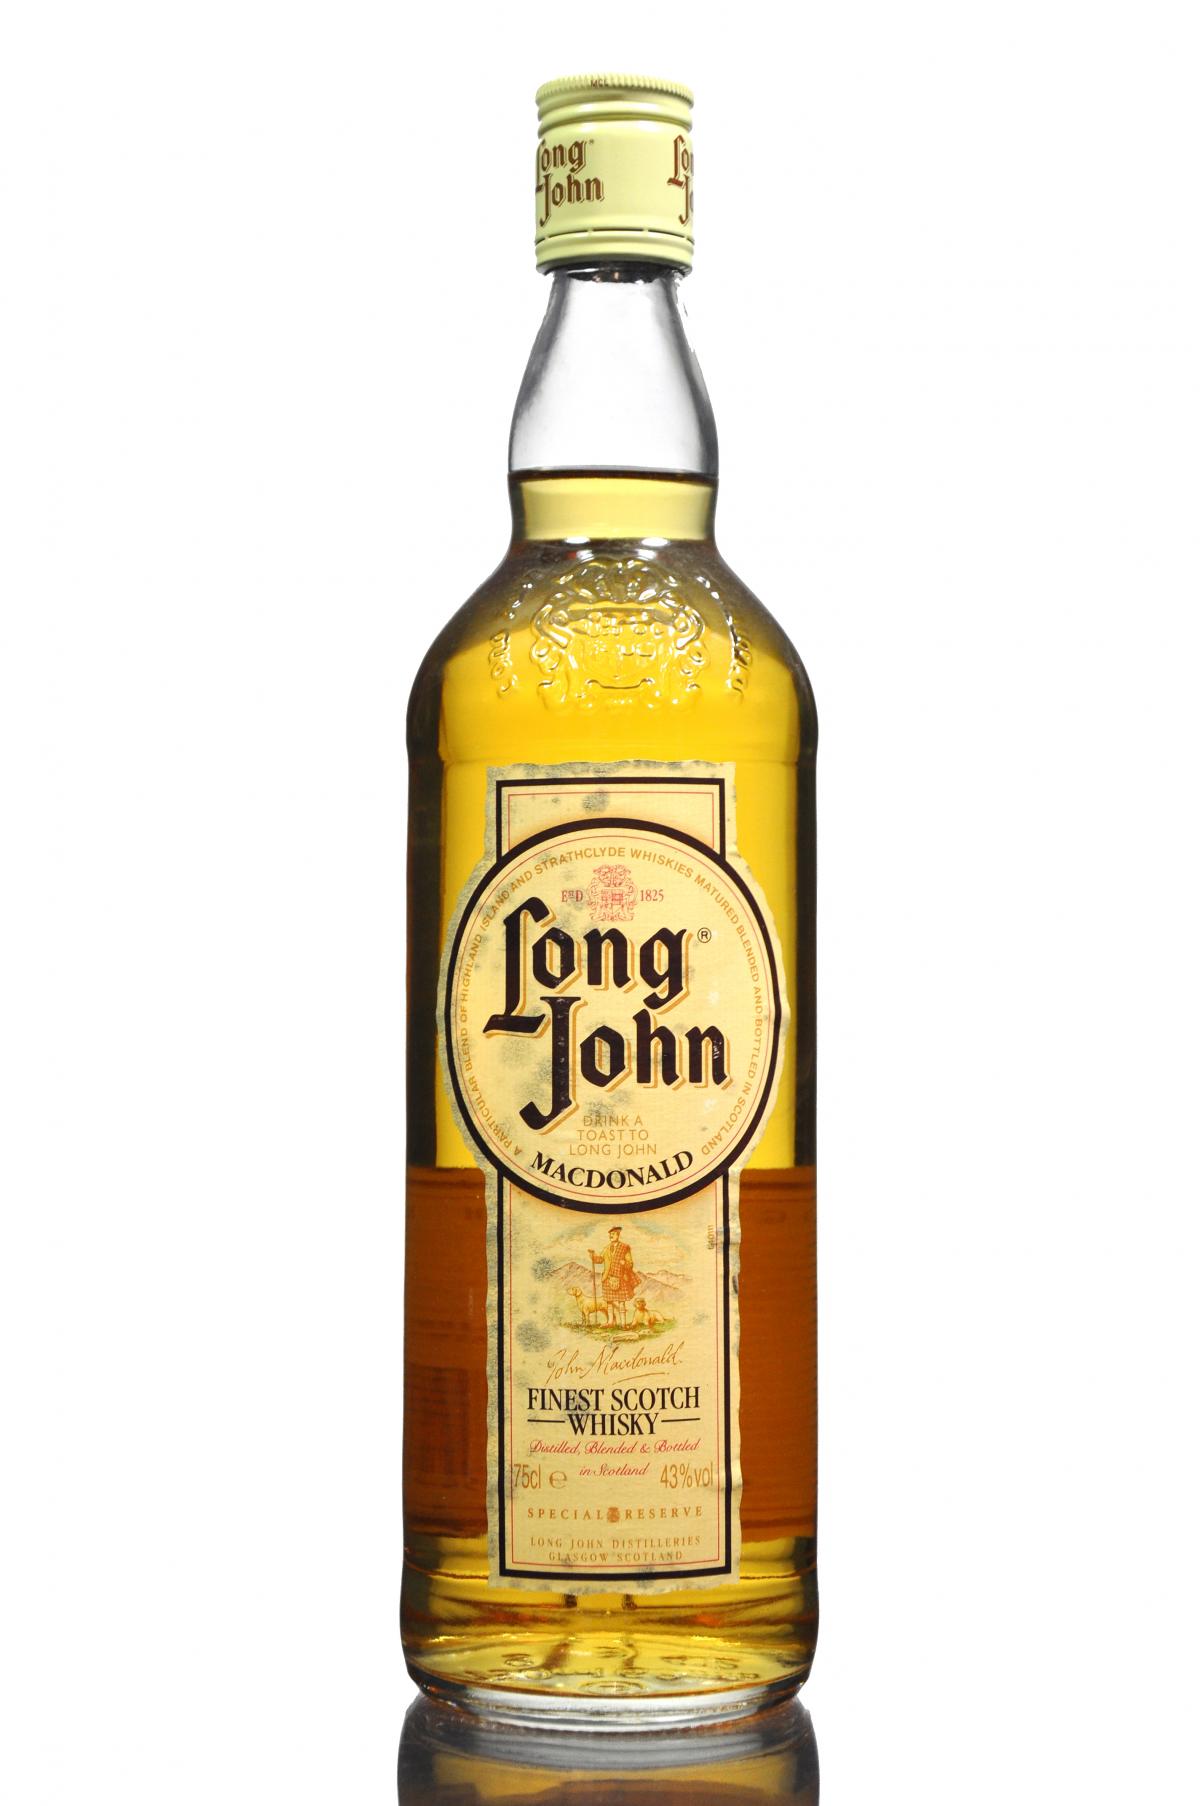 Long John